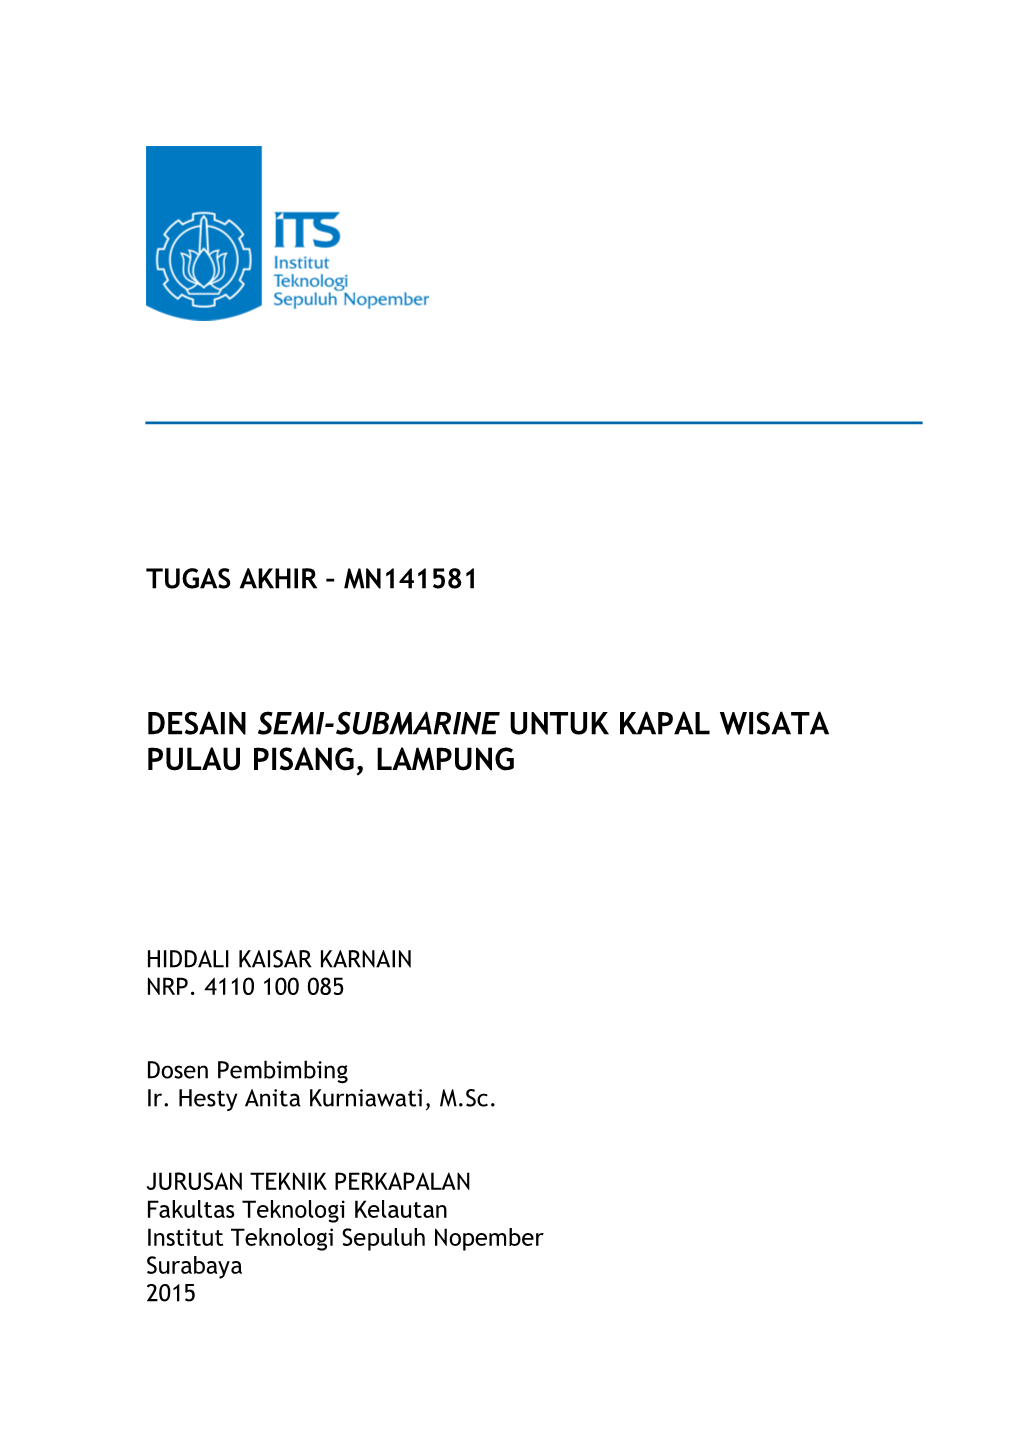 Desain Semi-Submarine Untuk Kapal Wisata Pulau Pisang, Lampung